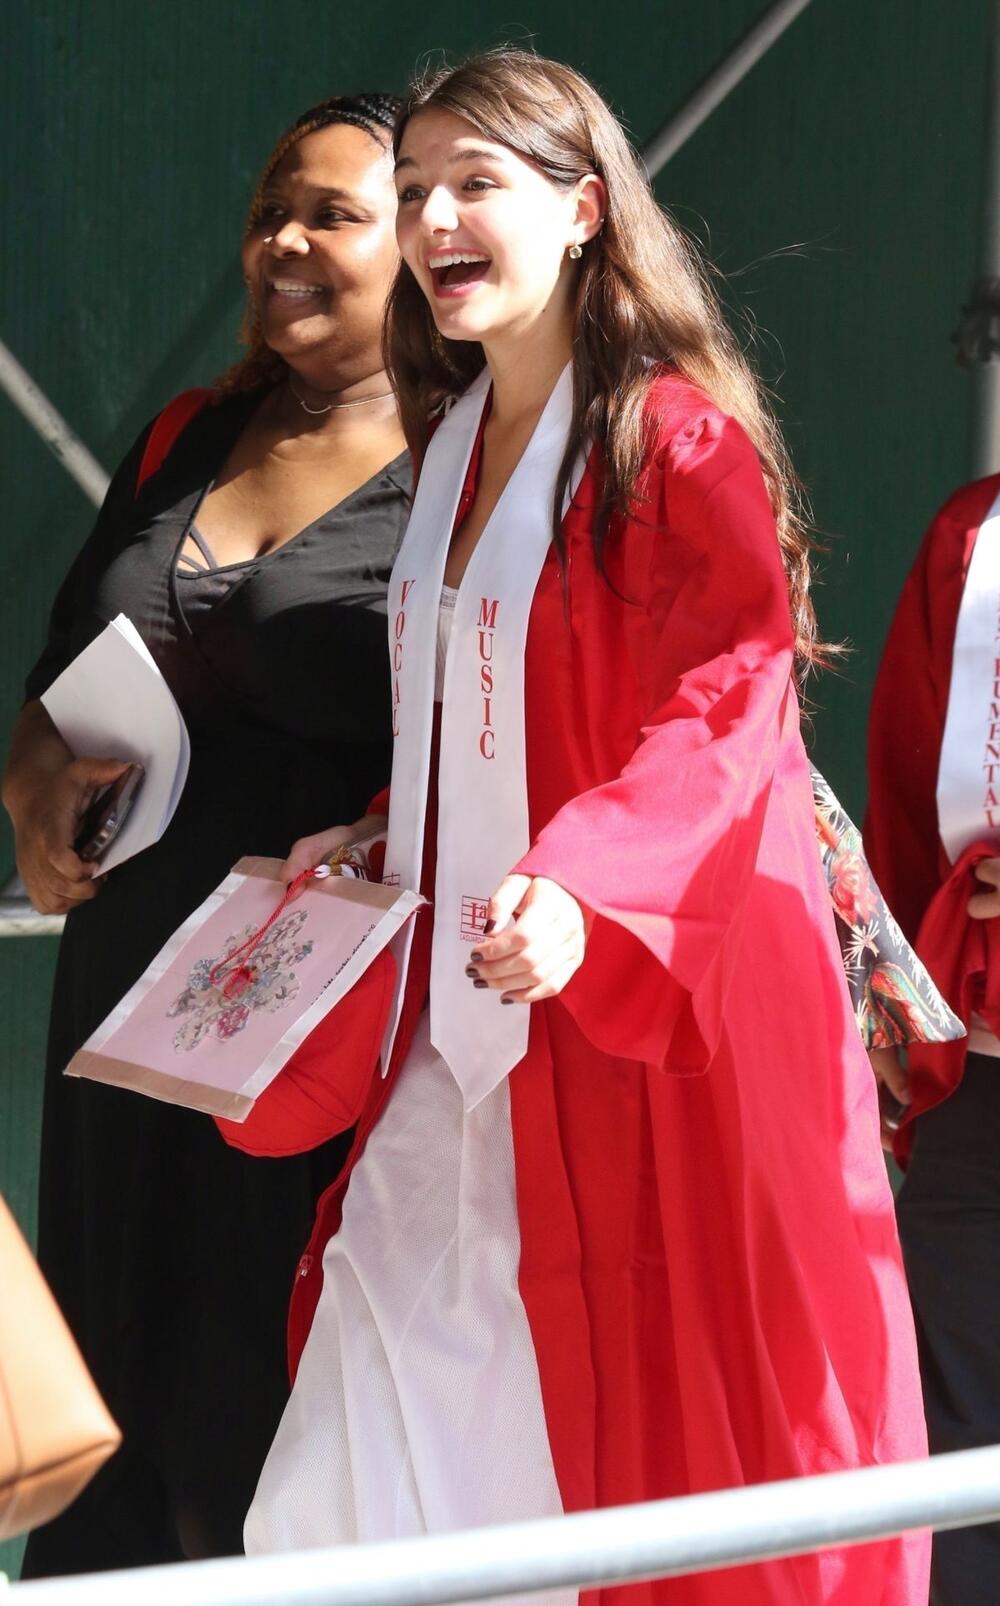 Devojčica je bila nasmejana na svojoj dodeli diploma